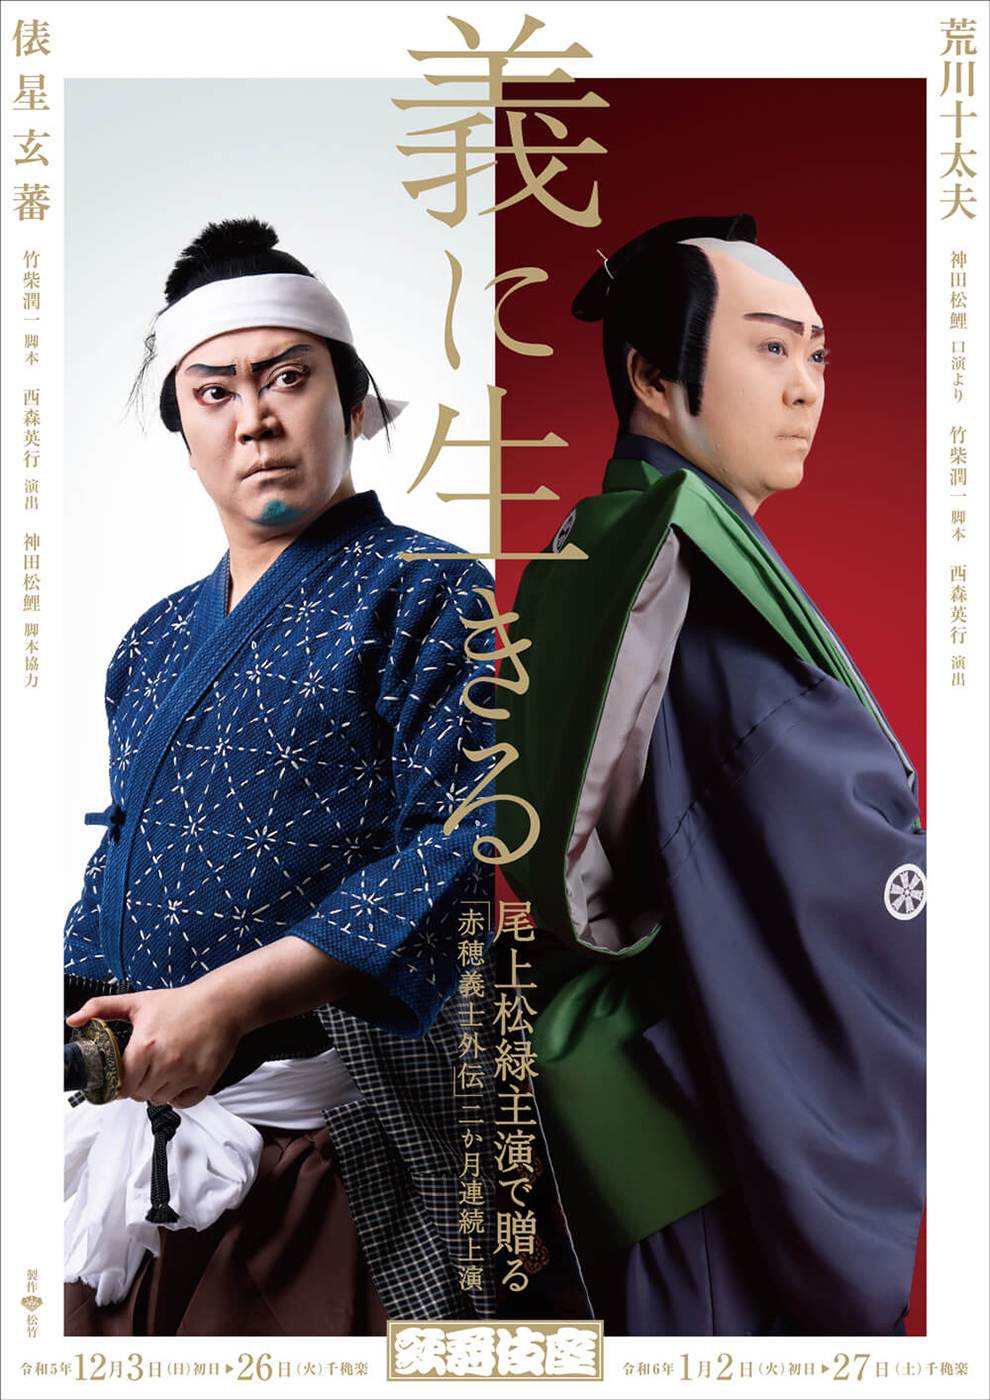 十二月大歌舞伎 第二部『爪王』『俵星玄蕃』歌舞伎座